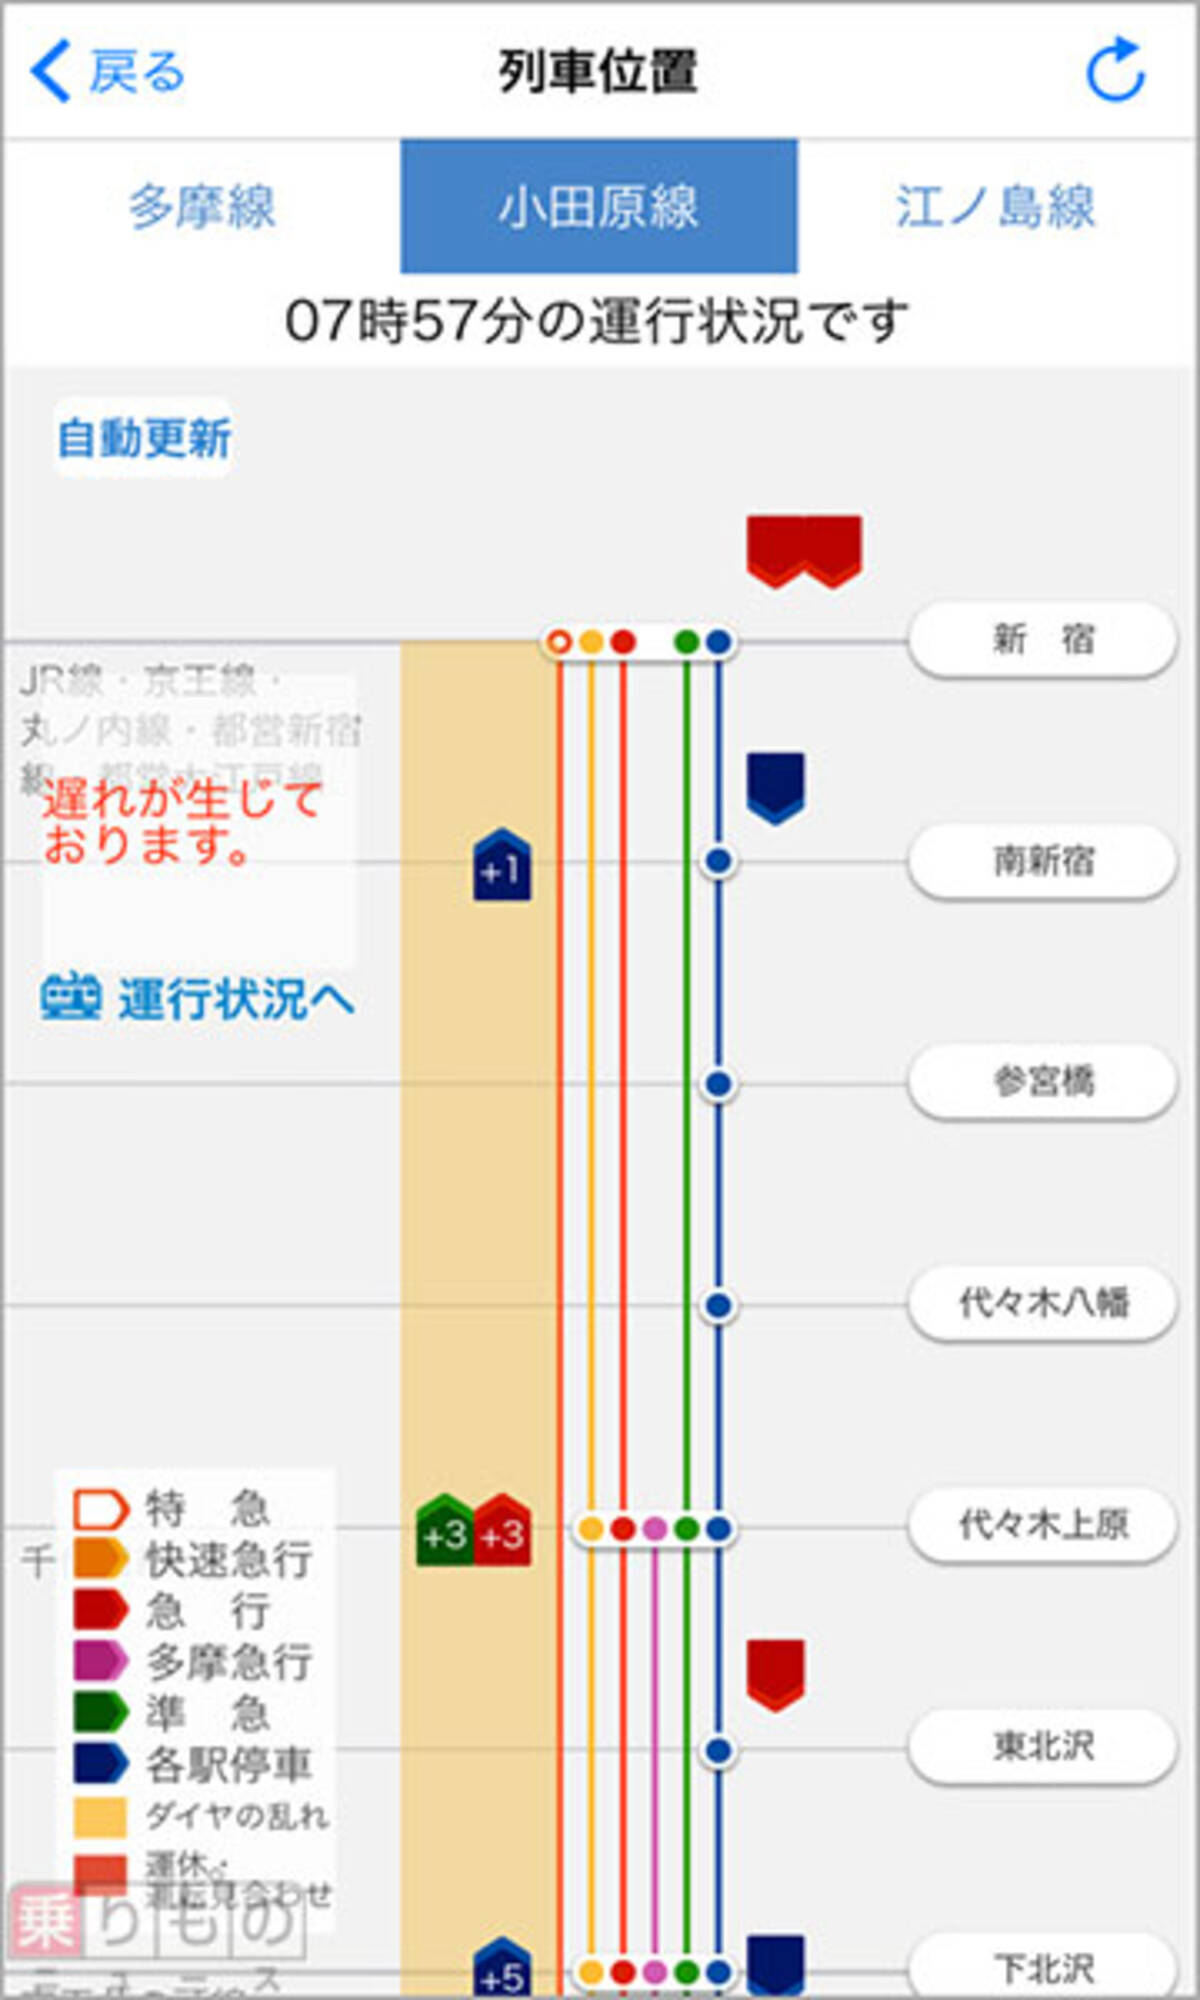 列車走行位置や震災時支援マップ搭載 小田急アプリ 7日配信開始 2017年6月5日 エキサイトニュース